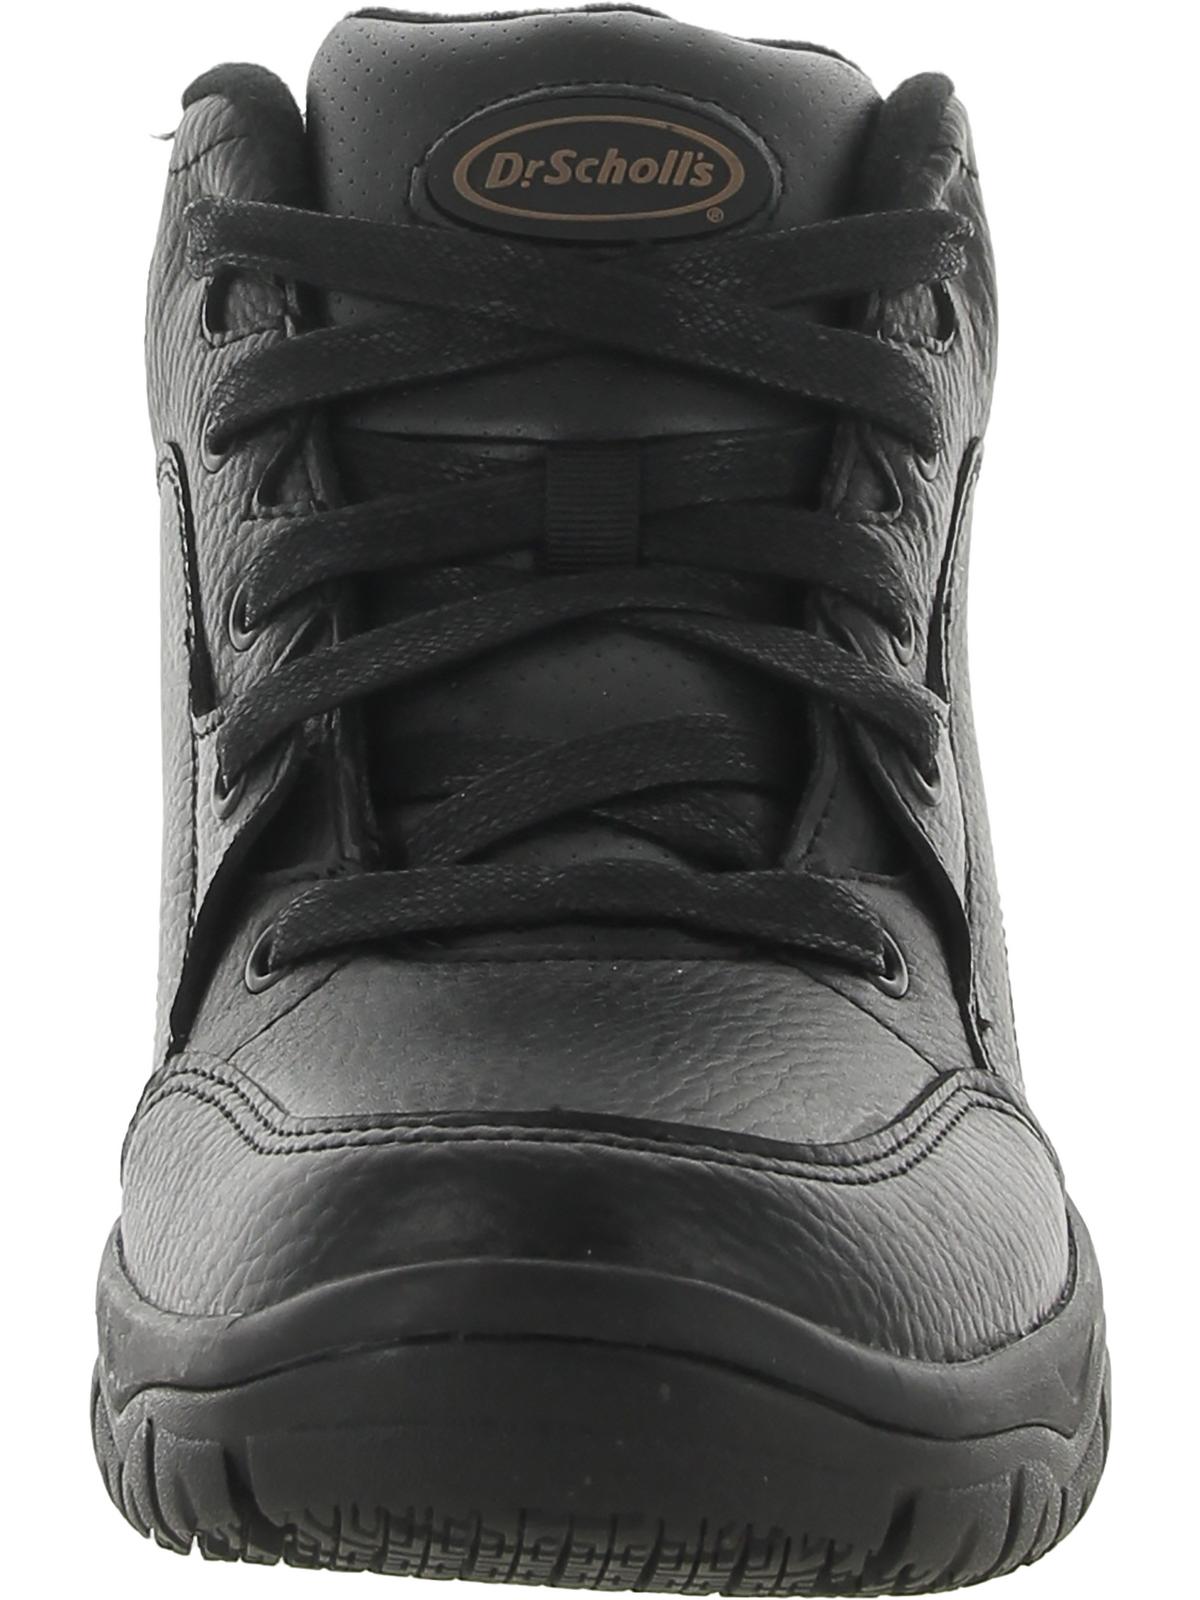 Dr. Scholls Men's Climber Wide Width Slip Resistant Industrial Shoe ...